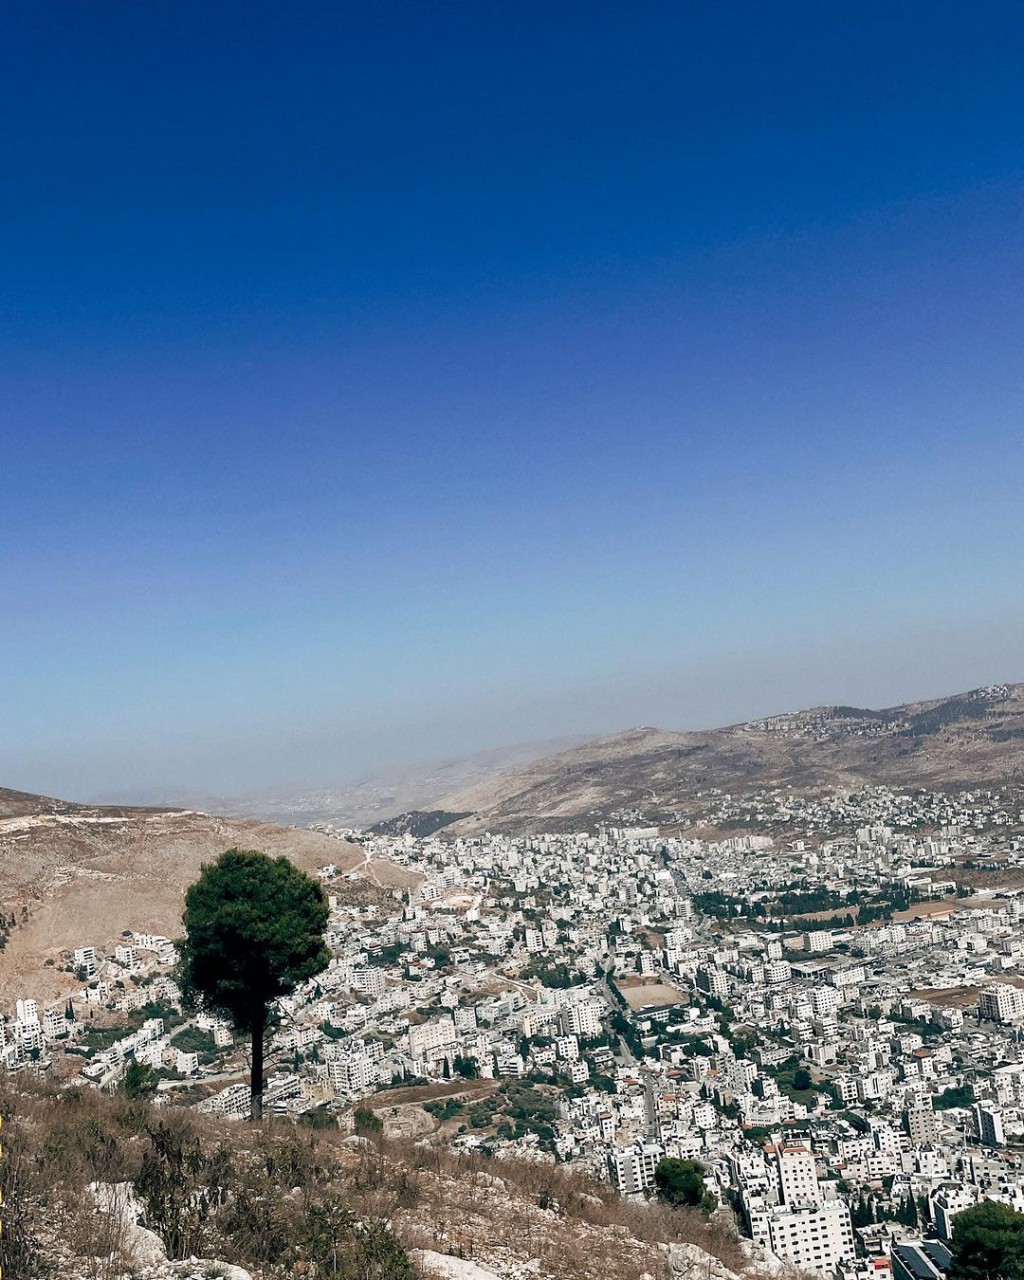 卫诗9月25日时曾分享一张以色列风景照。